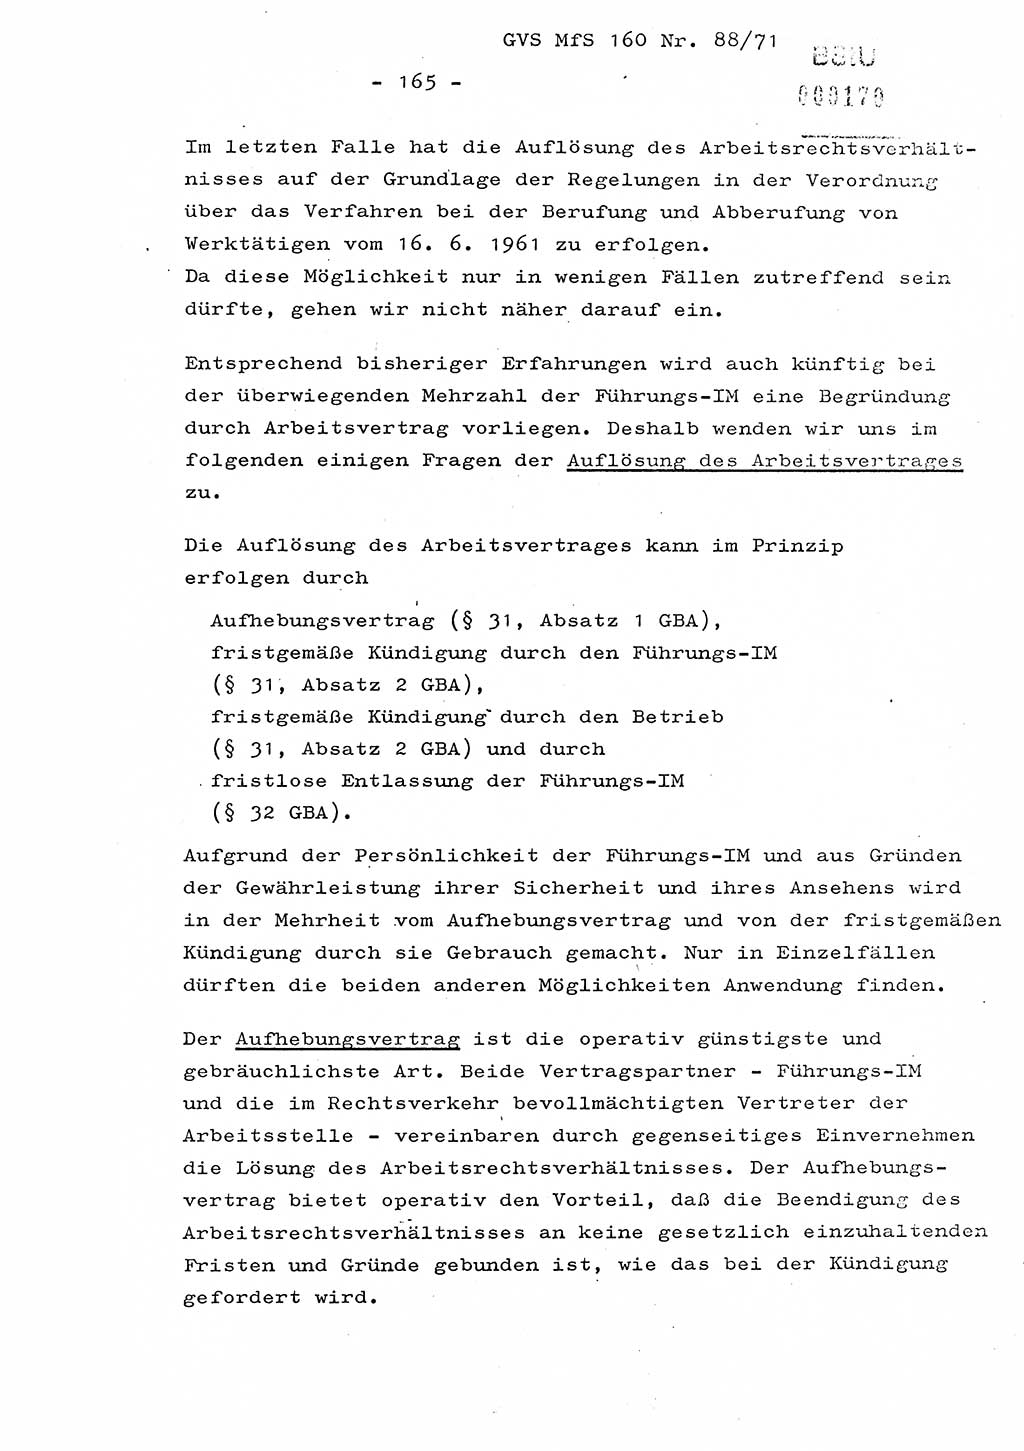 Dissertation Oberstleutnant Josef Schwarz (BV Schwerin), Major Fritz Amm (JHS), Hauptmann Peter Gräßler (JHS), Ministerium für Staatssicherheit (MfS) [Deutsche Demokratische Republik (DDR)], Juristische Hochschule (JHS), Geheime Verschlußsache (GVS) 160-88/71, Potsdam 1972, Seite 165 (Diss. MfS DDR JHS GVS 160-88/71 1972, S. 165)